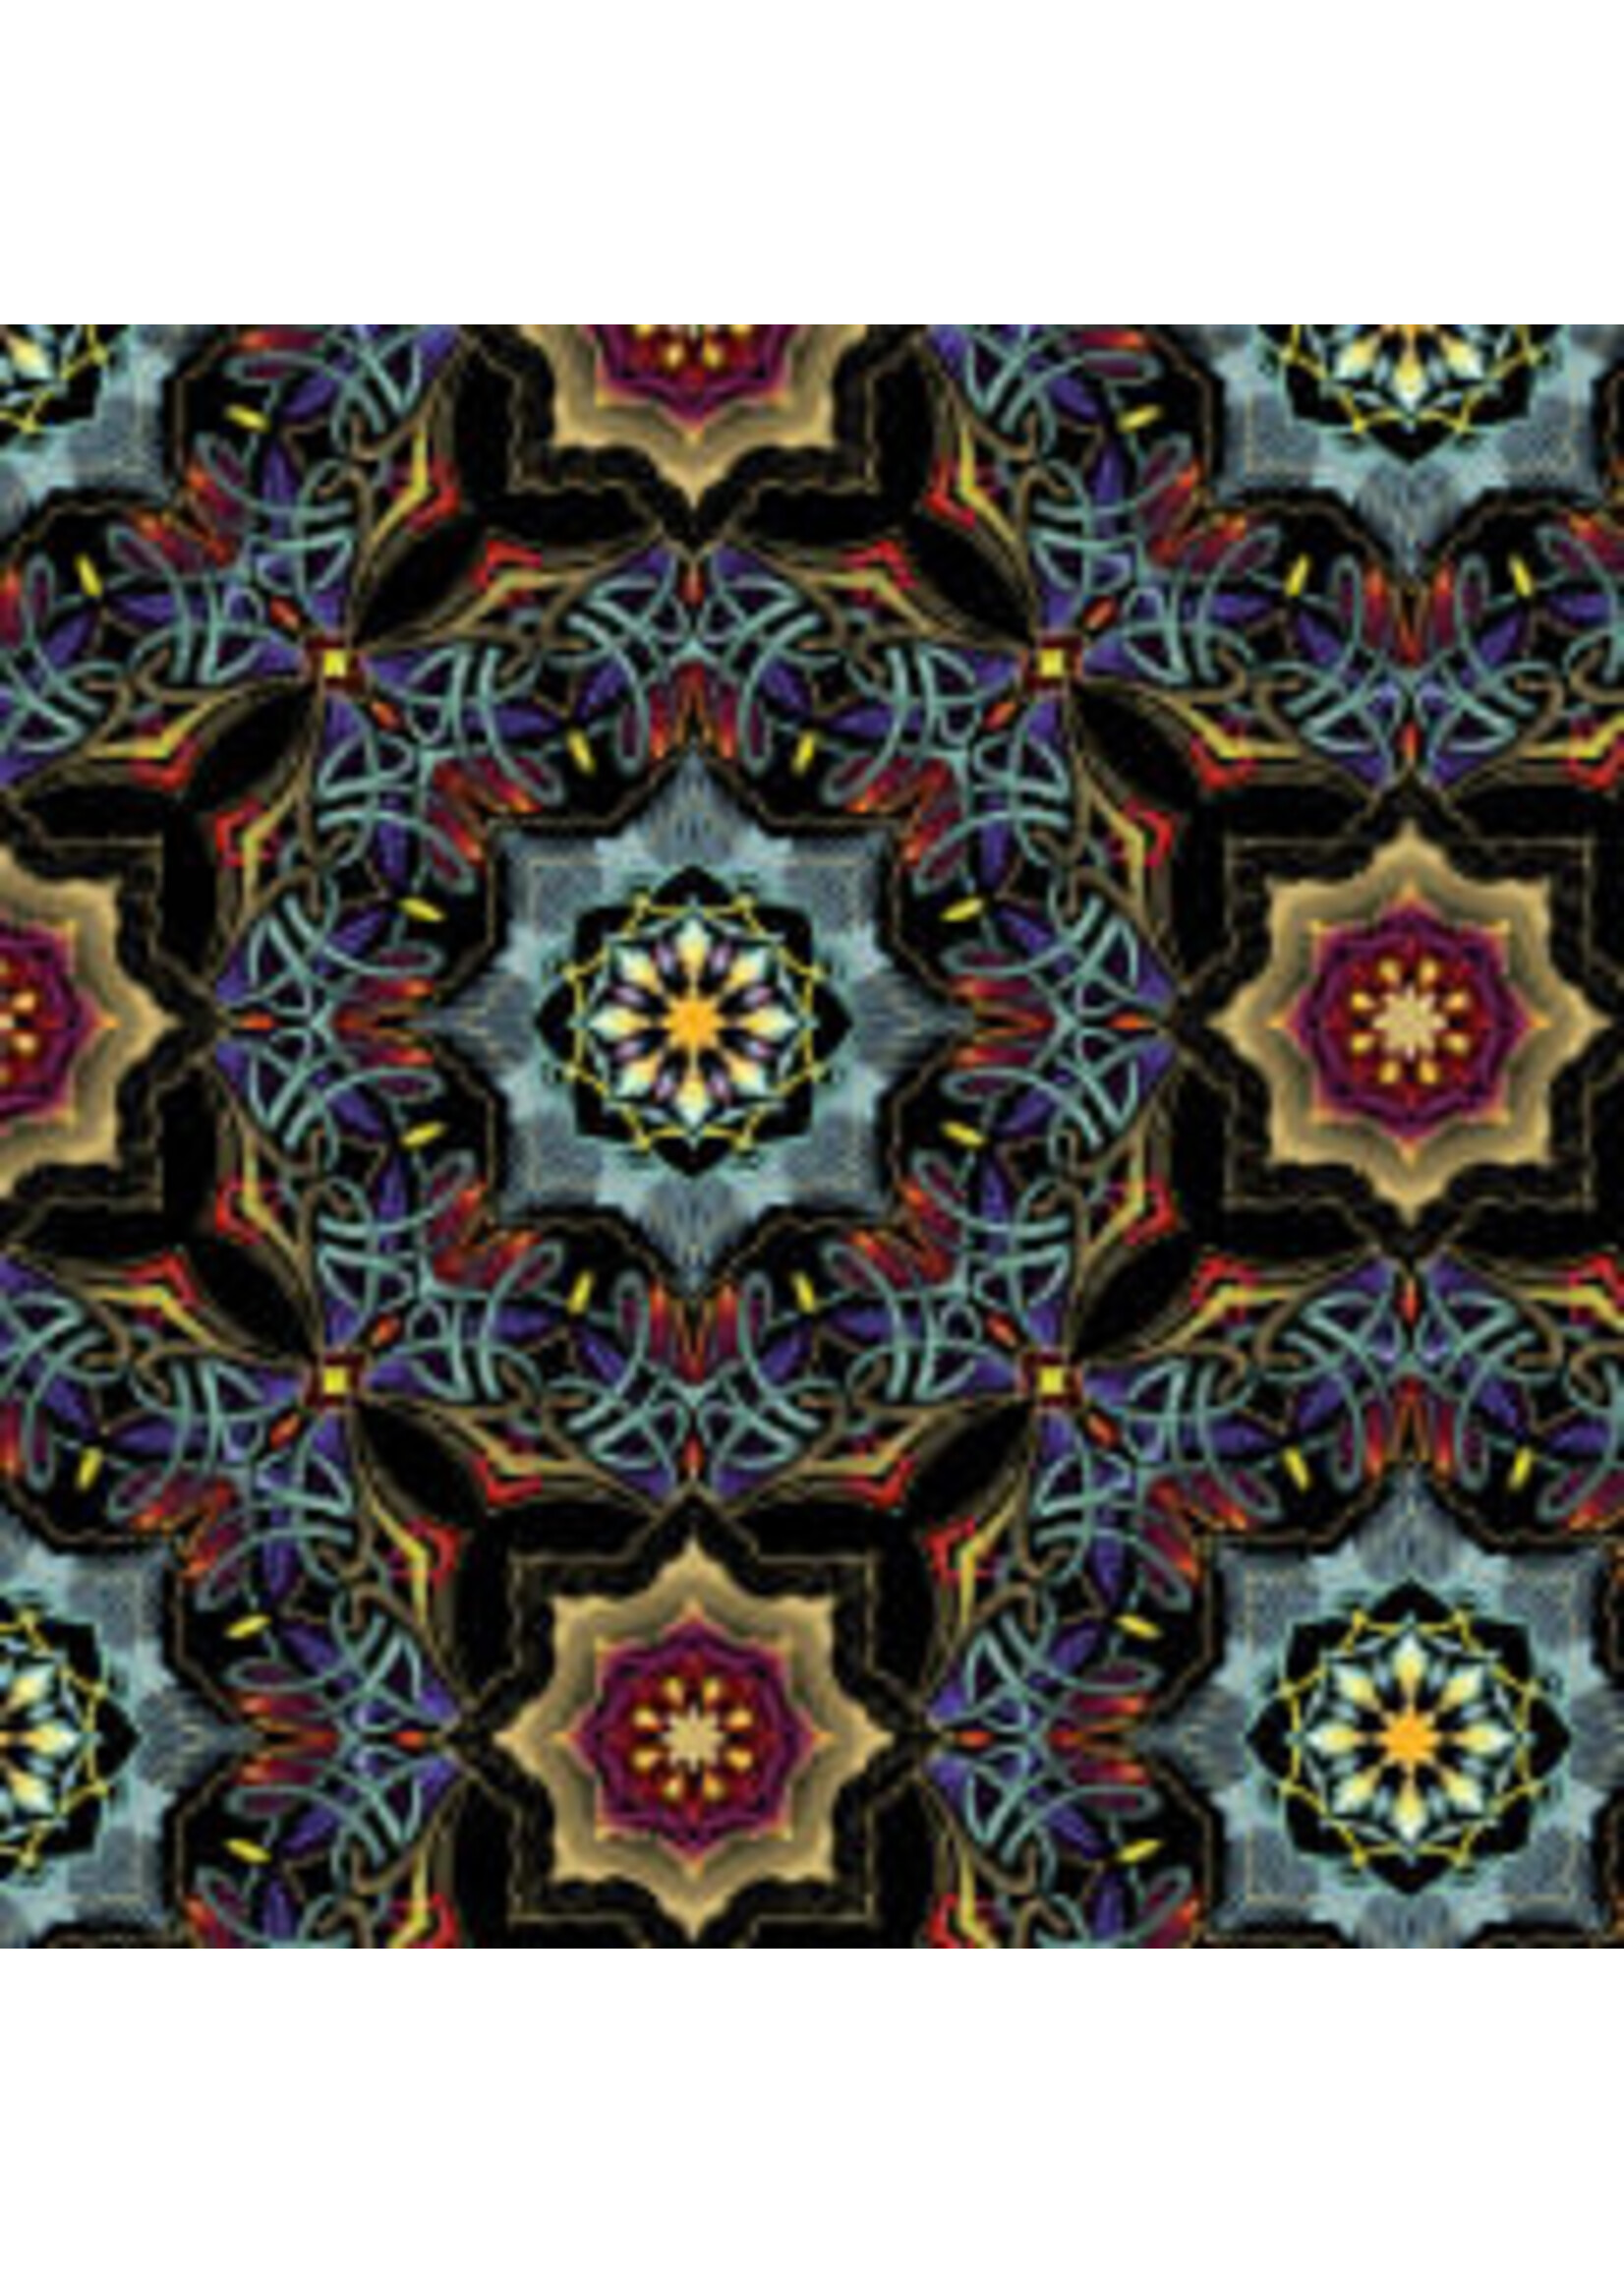 Windham Fabrics Grand Illusion - Mandalas - Multi/Black - Coupon - 95 cm x 110 cm